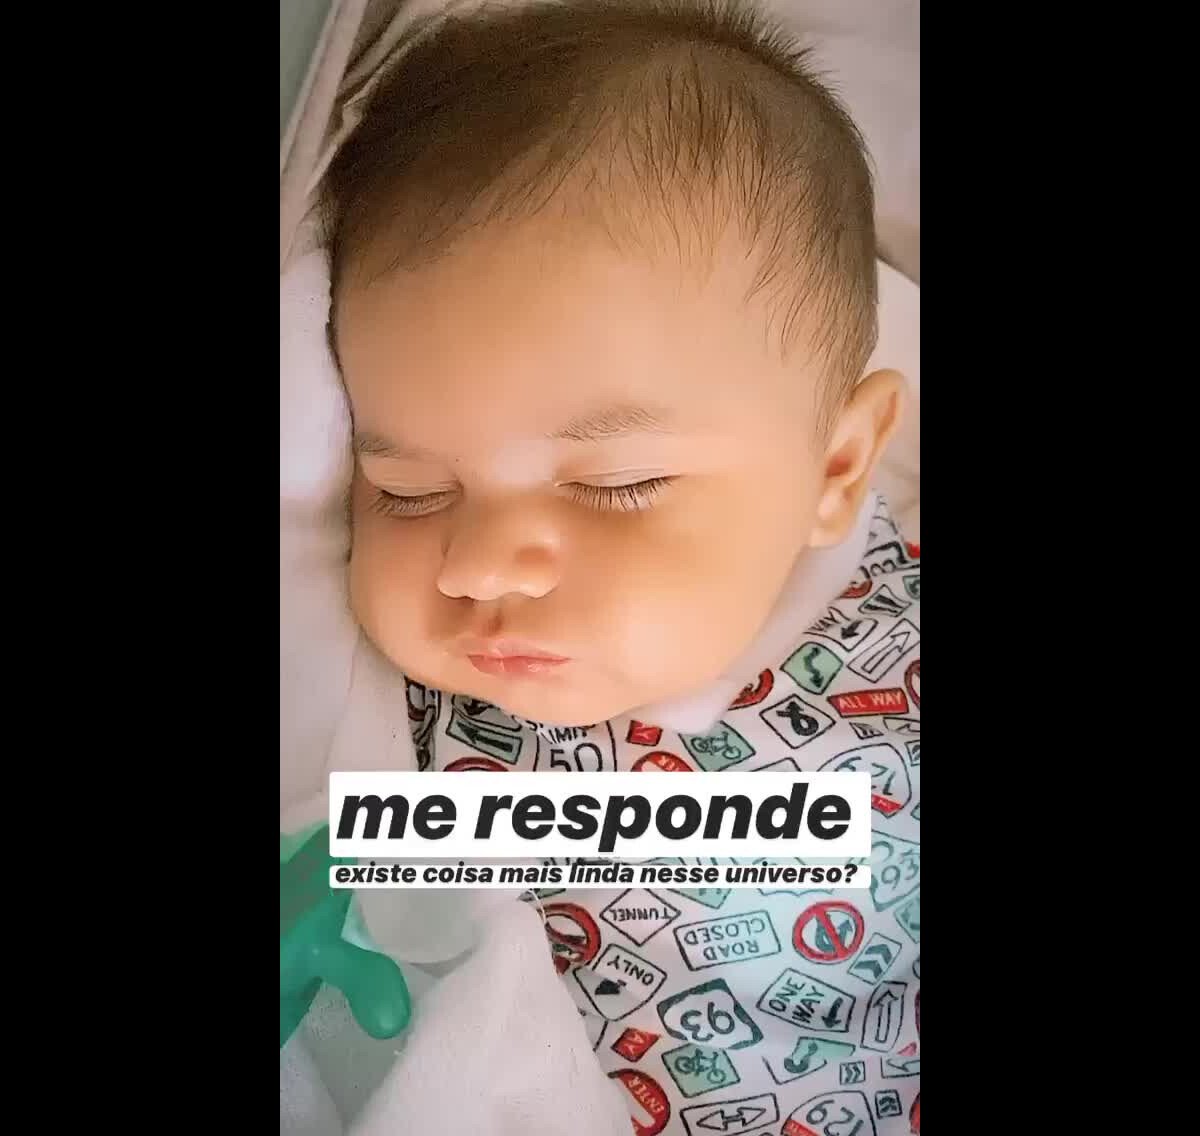 Em quarentena, Marília Mendonça compartilha vídeo engraçado com o filho